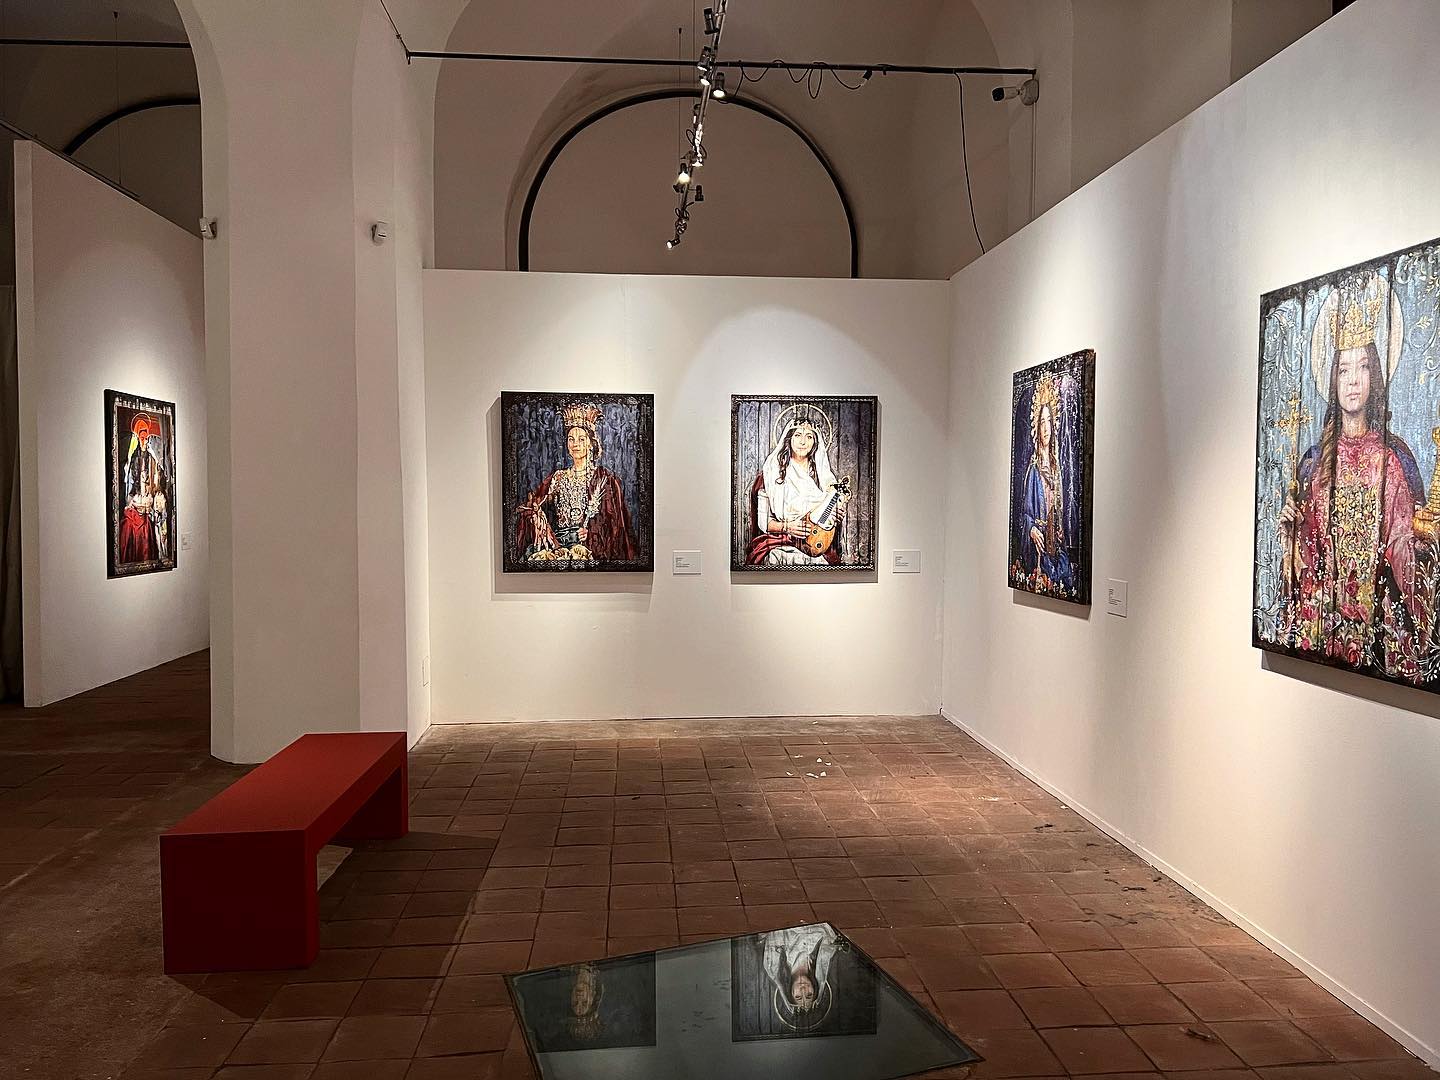 Andrea Chisesi, Eteria, Exhibition view at Palazzo della Cultura, Catania, 2022